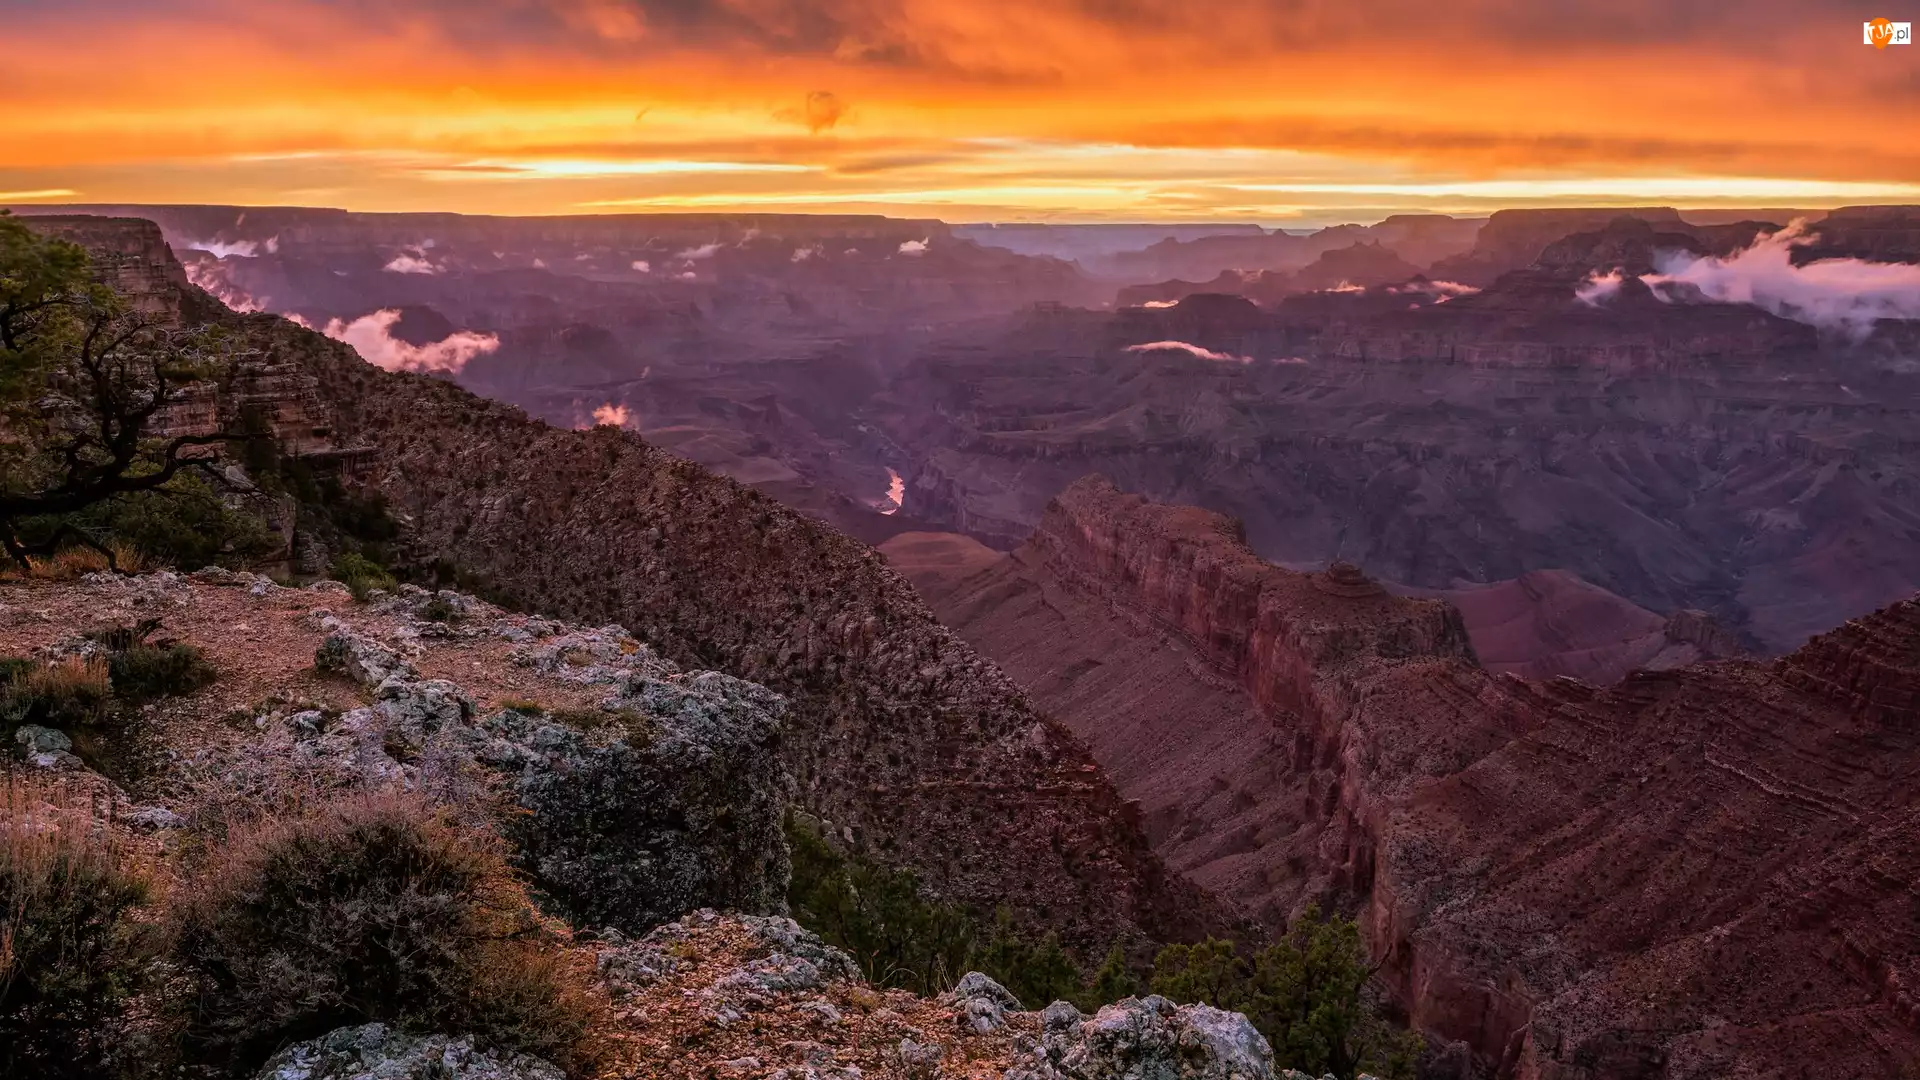 Park Narodowy Wielkiego Kanionu, Stany Zjednoczone, Kaniony, Zachód słońca, Arizona